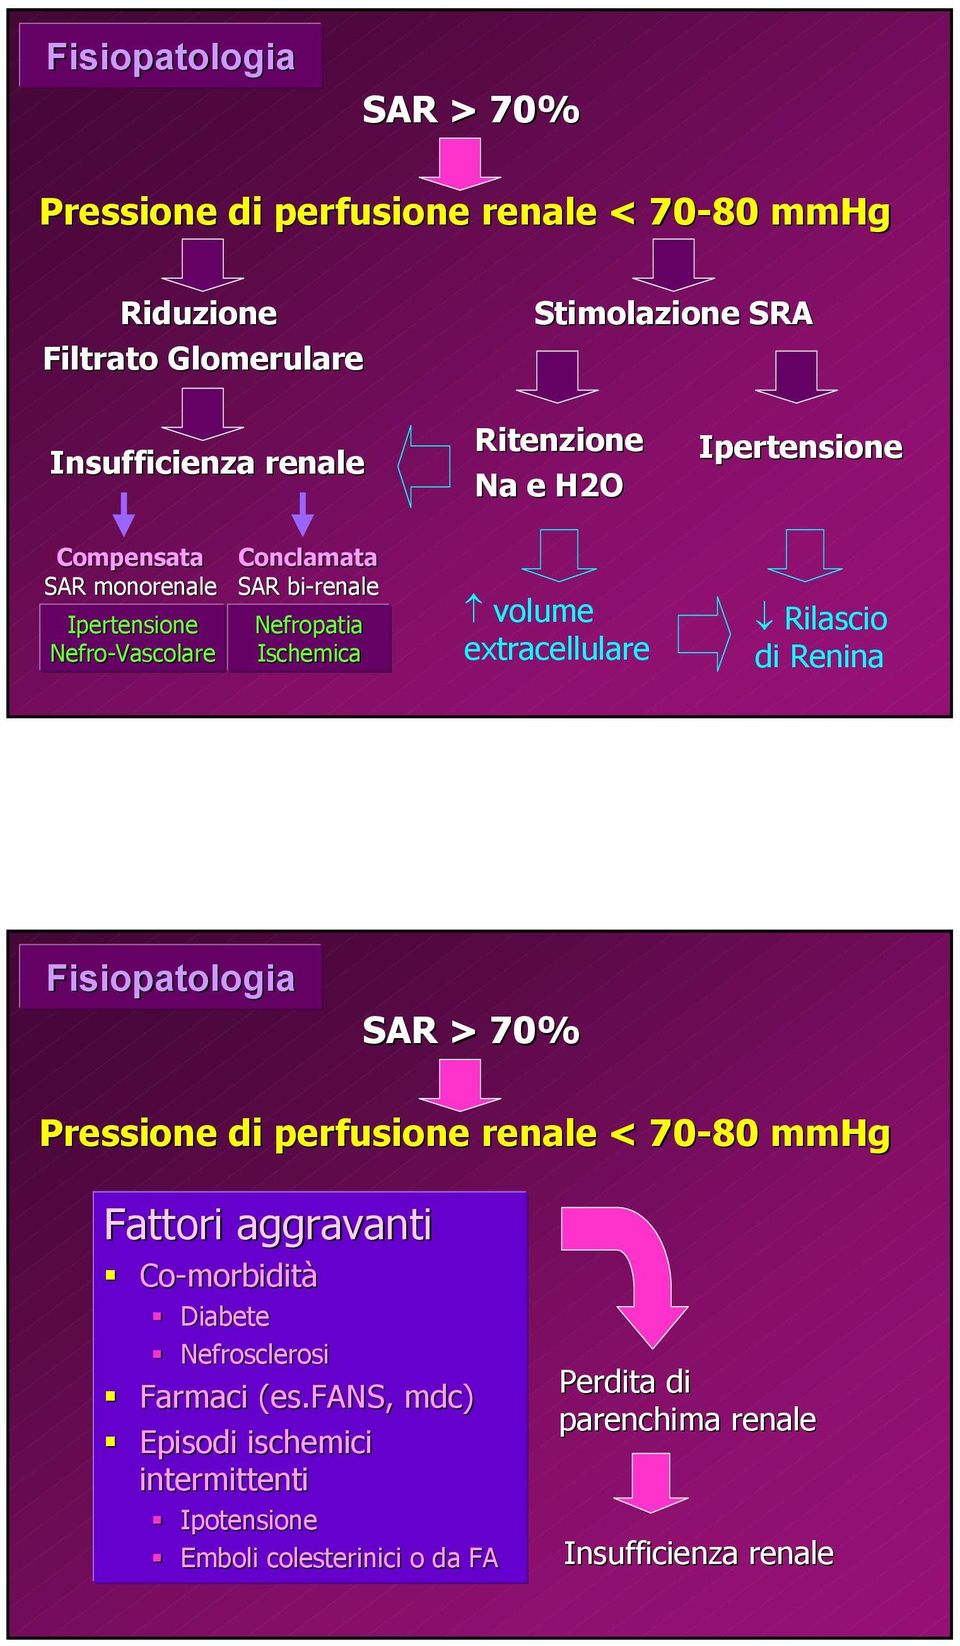 extracellulare Rilascio di Renina Fisiopatologia SAR > 70% Pressione di perfusione renale < 70-80 mmhg Fattori aggravanti Co-morbidità Diabete